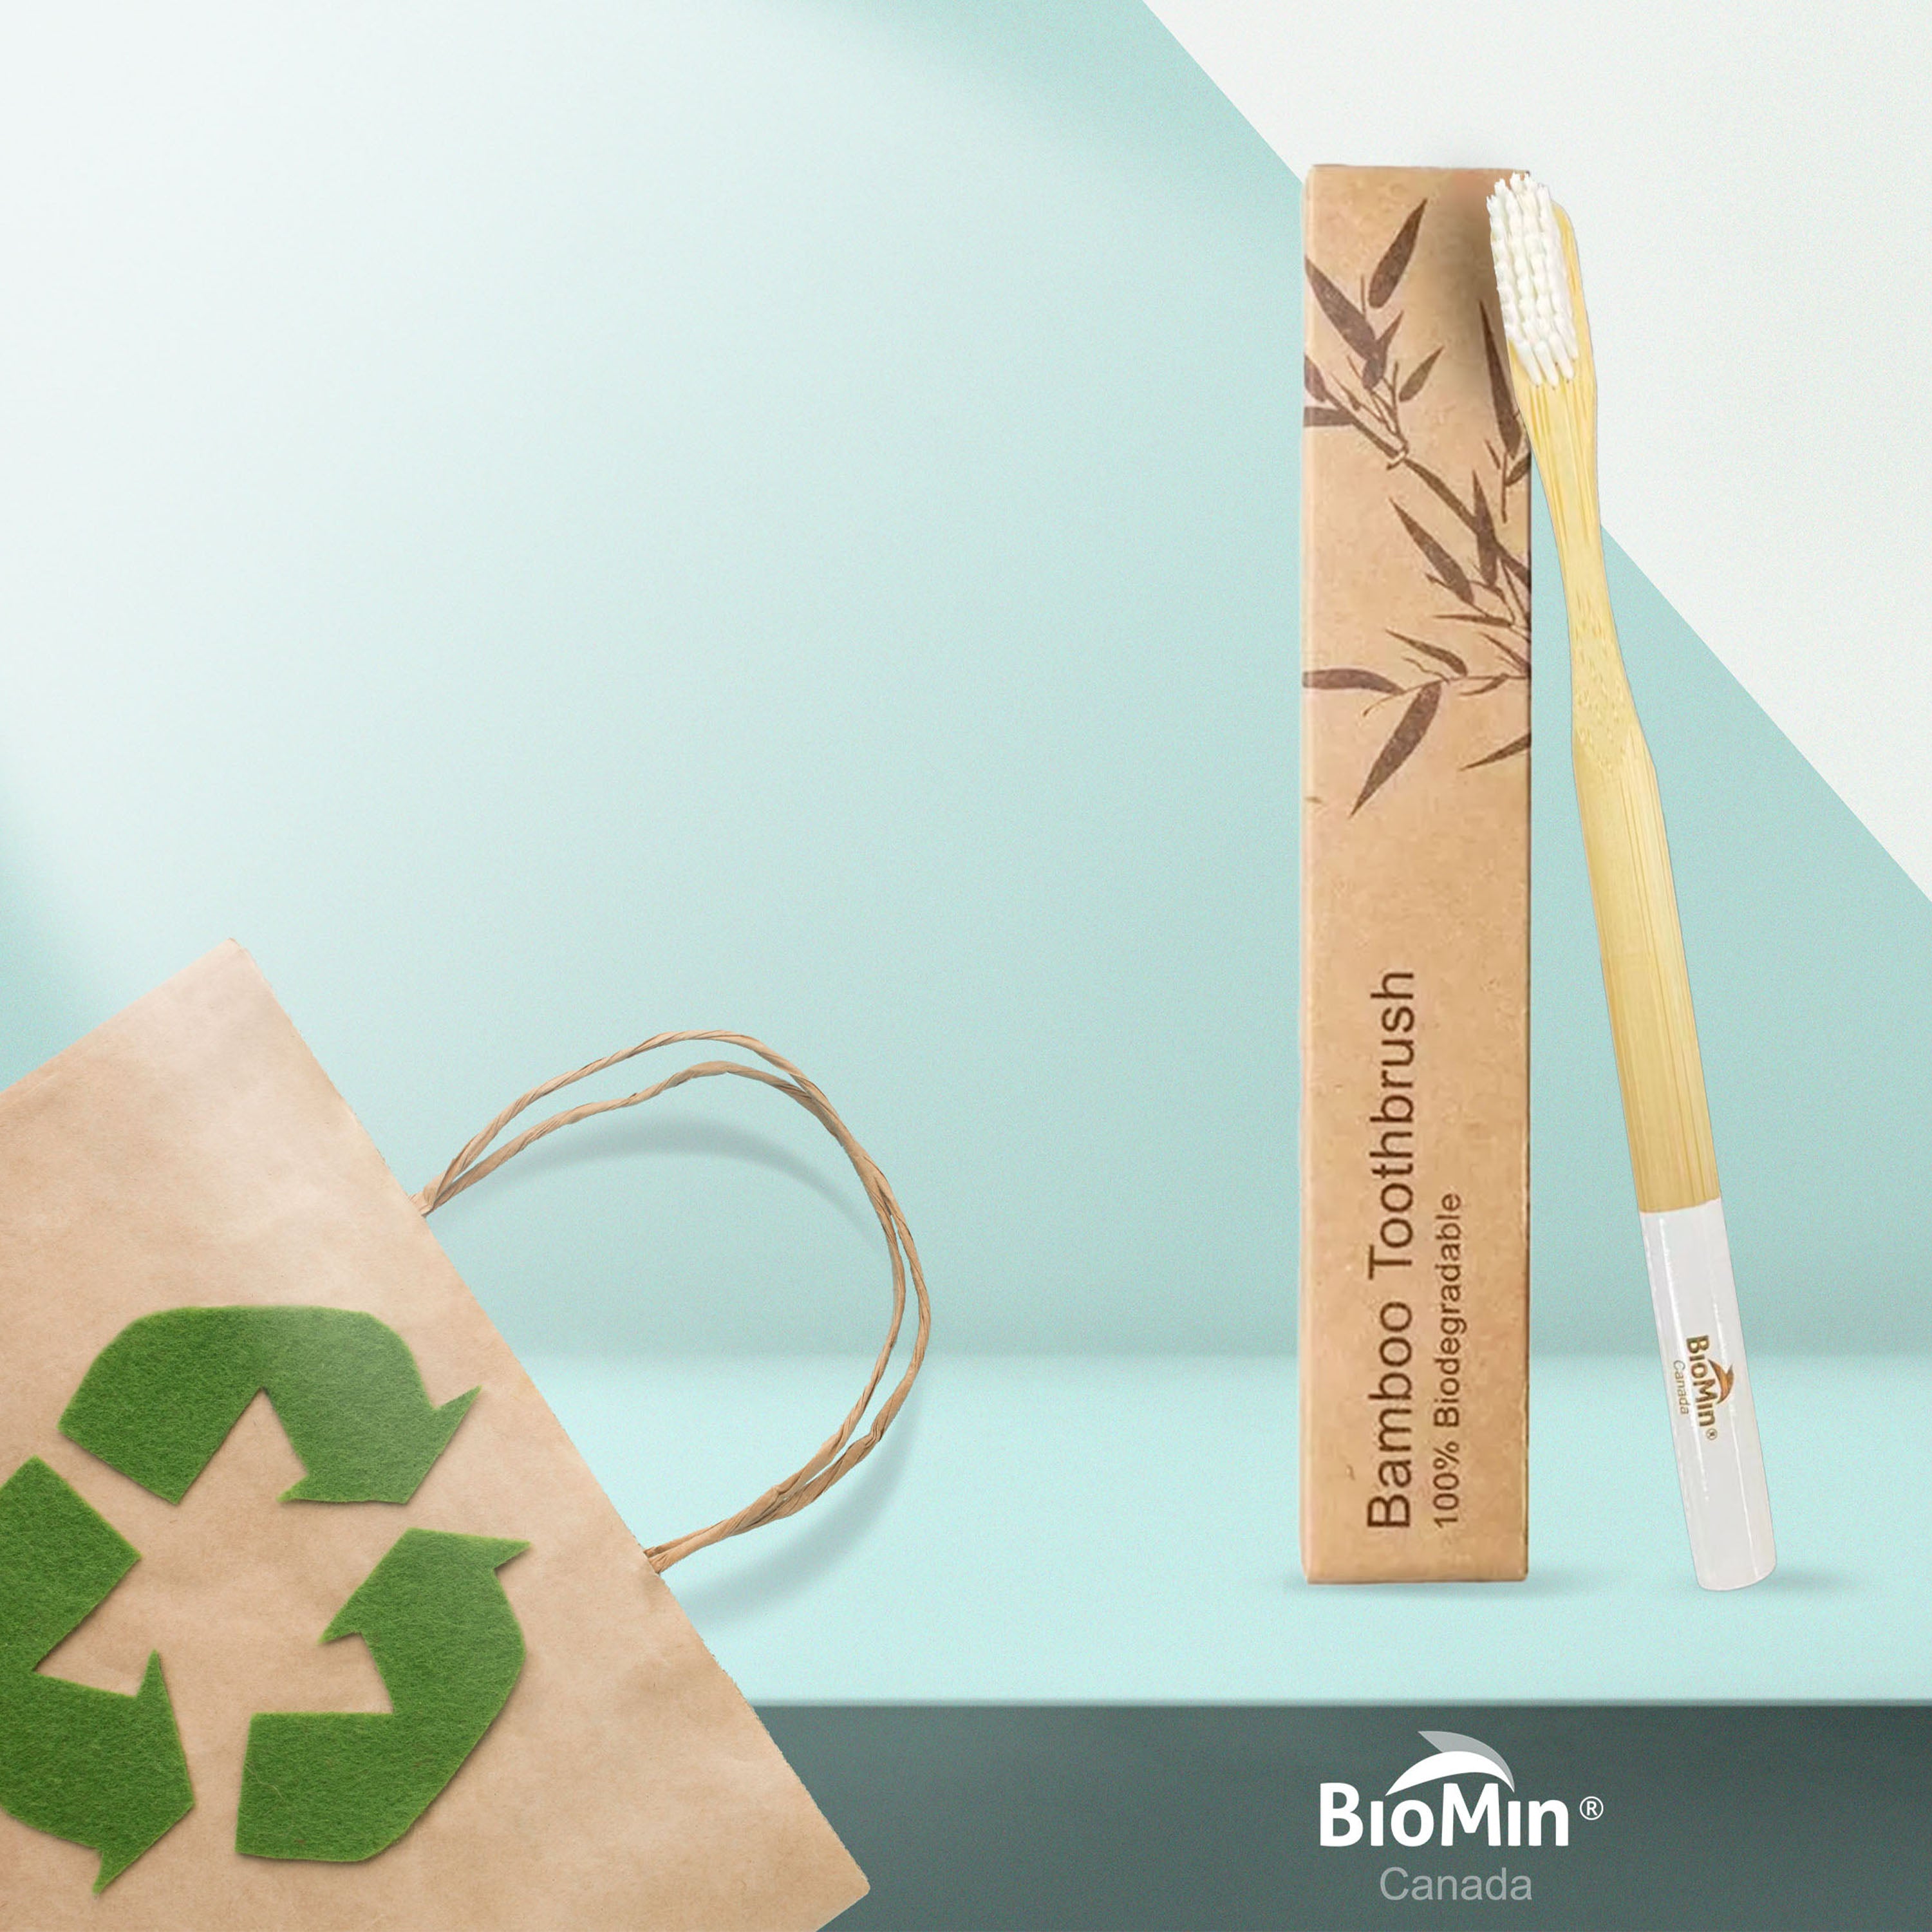 Cepillo de dientes desechable de bambú biodegradable ecológico